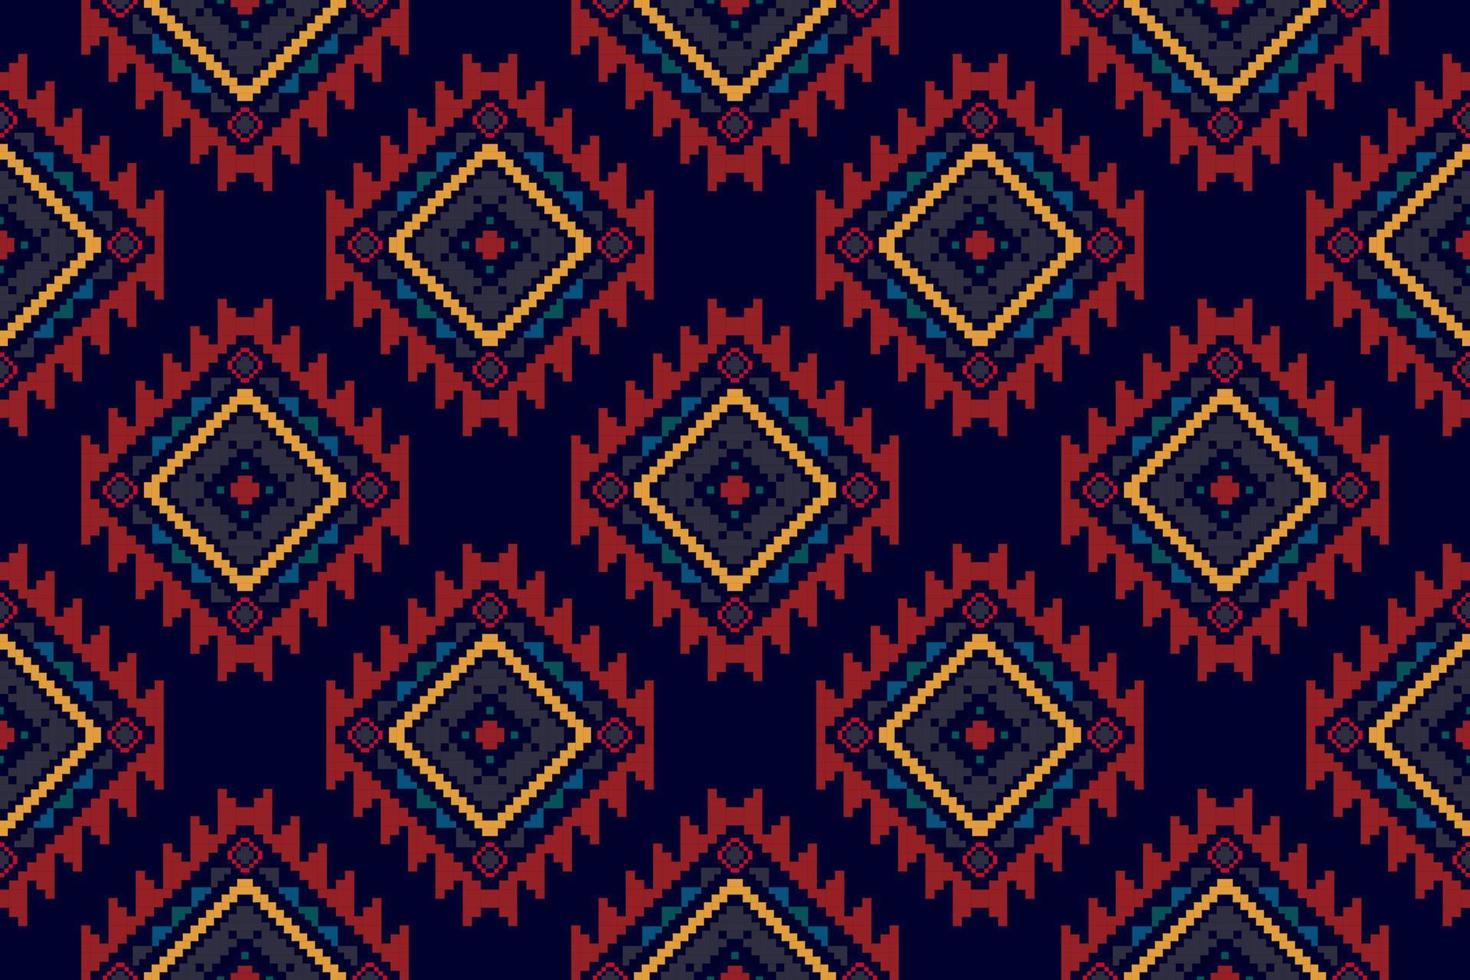 ikat etnisch Hongaars Pools volk patroon ontwerp. aztec kleding stof tapijt boho mandala's textiel decor behang. tribal inheems motief bloem traditioneel borduurwerk vector geïllustreerd